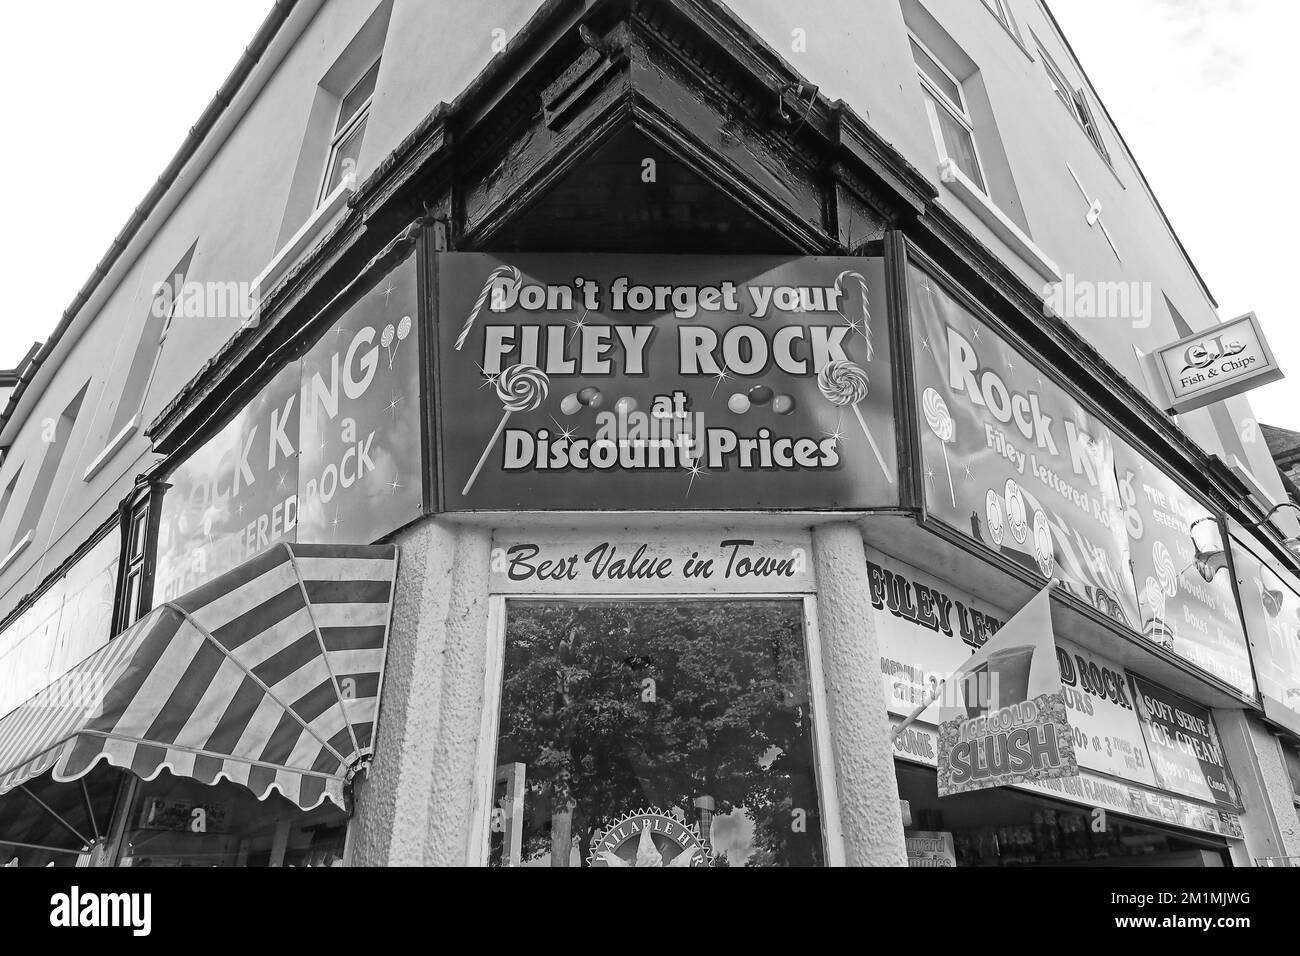 La boutique traditionnelle de Filey Rock, prix réduits, meilleur rapport qualité/prix en ville, 46a Murray Street, Filey, North Yorkshire, Angleterre, ROYAUME-UNI, YO14 9DG Banque D'Images